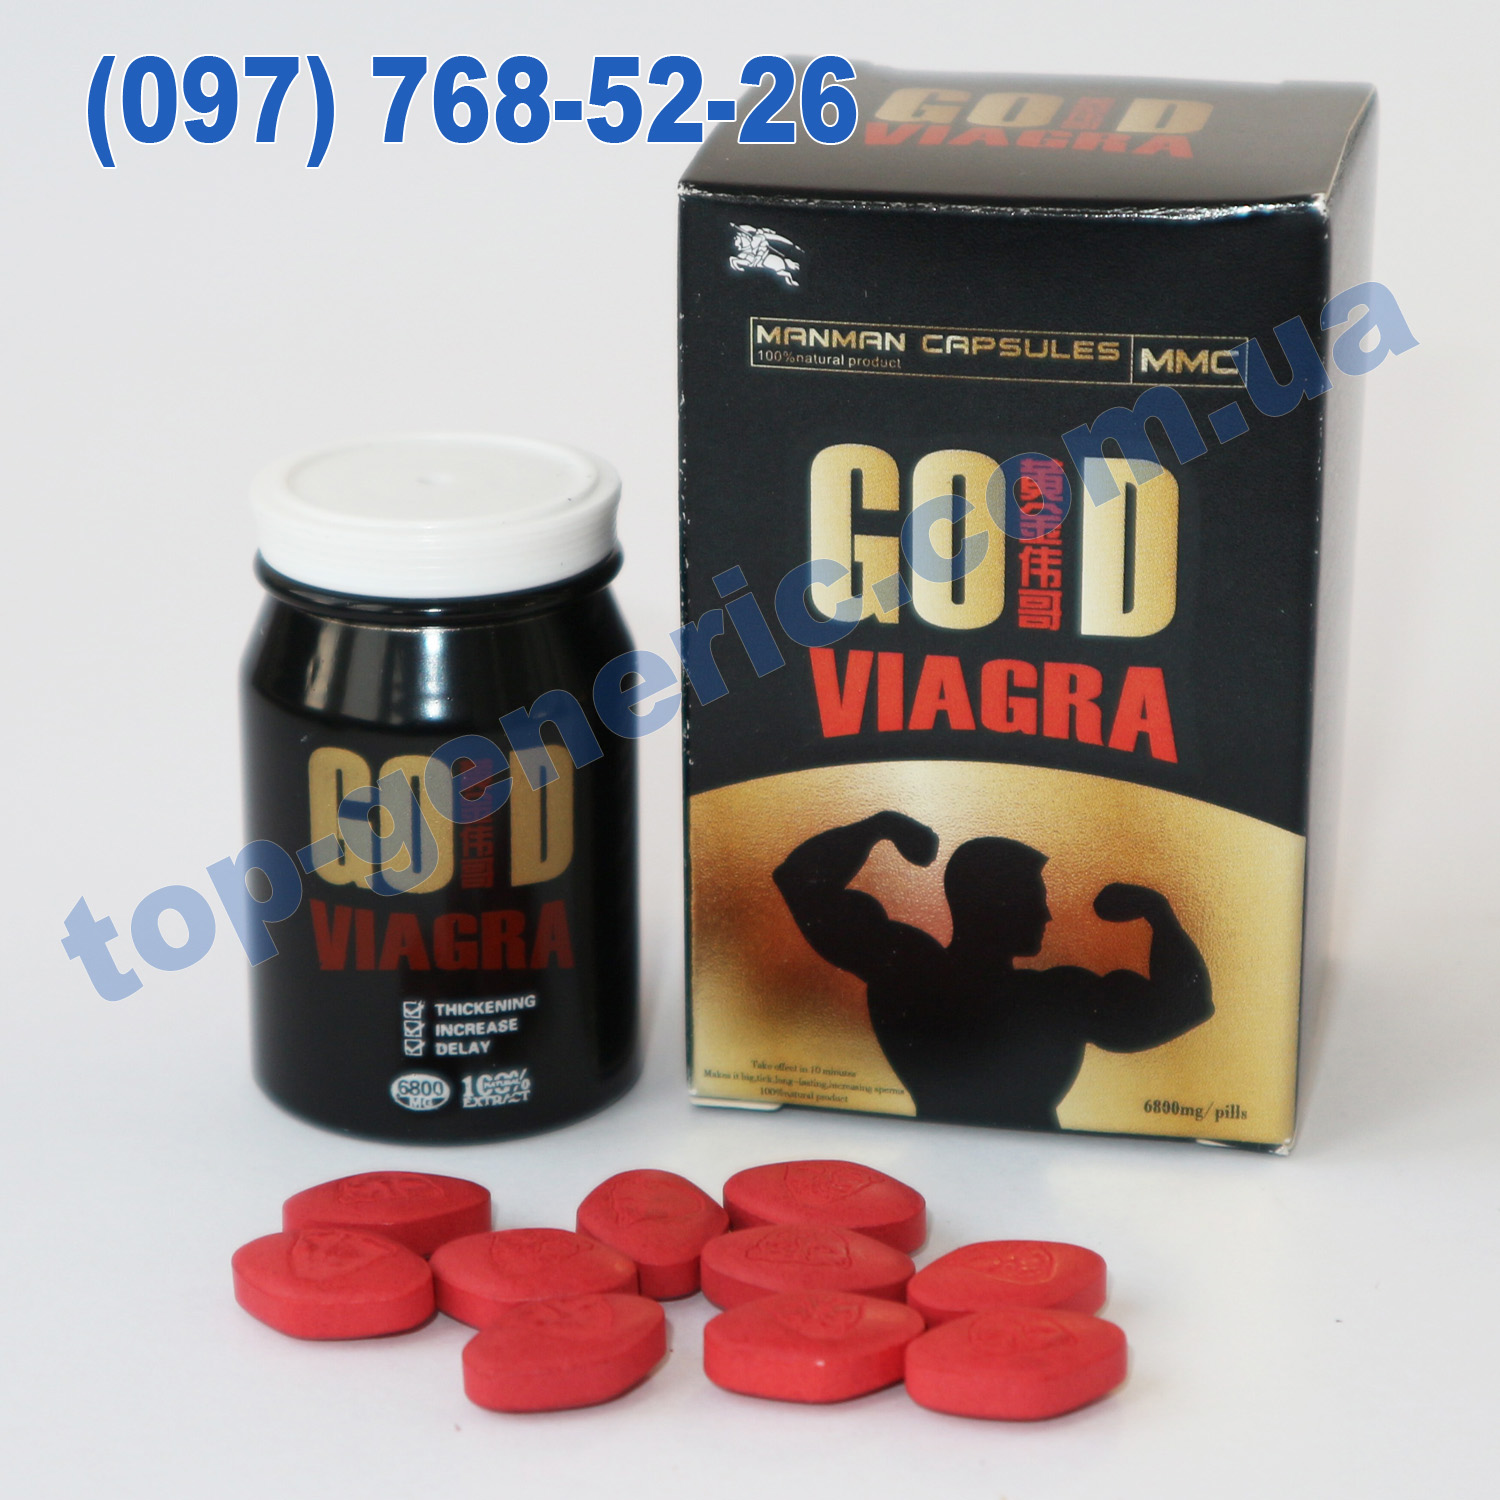 Виагра отзывы мужчин инструкция по применению. Gold viagra таблетки. Китайские таблетки виагра. Золотая виагра китайская. Китайская виагра для мужчин.